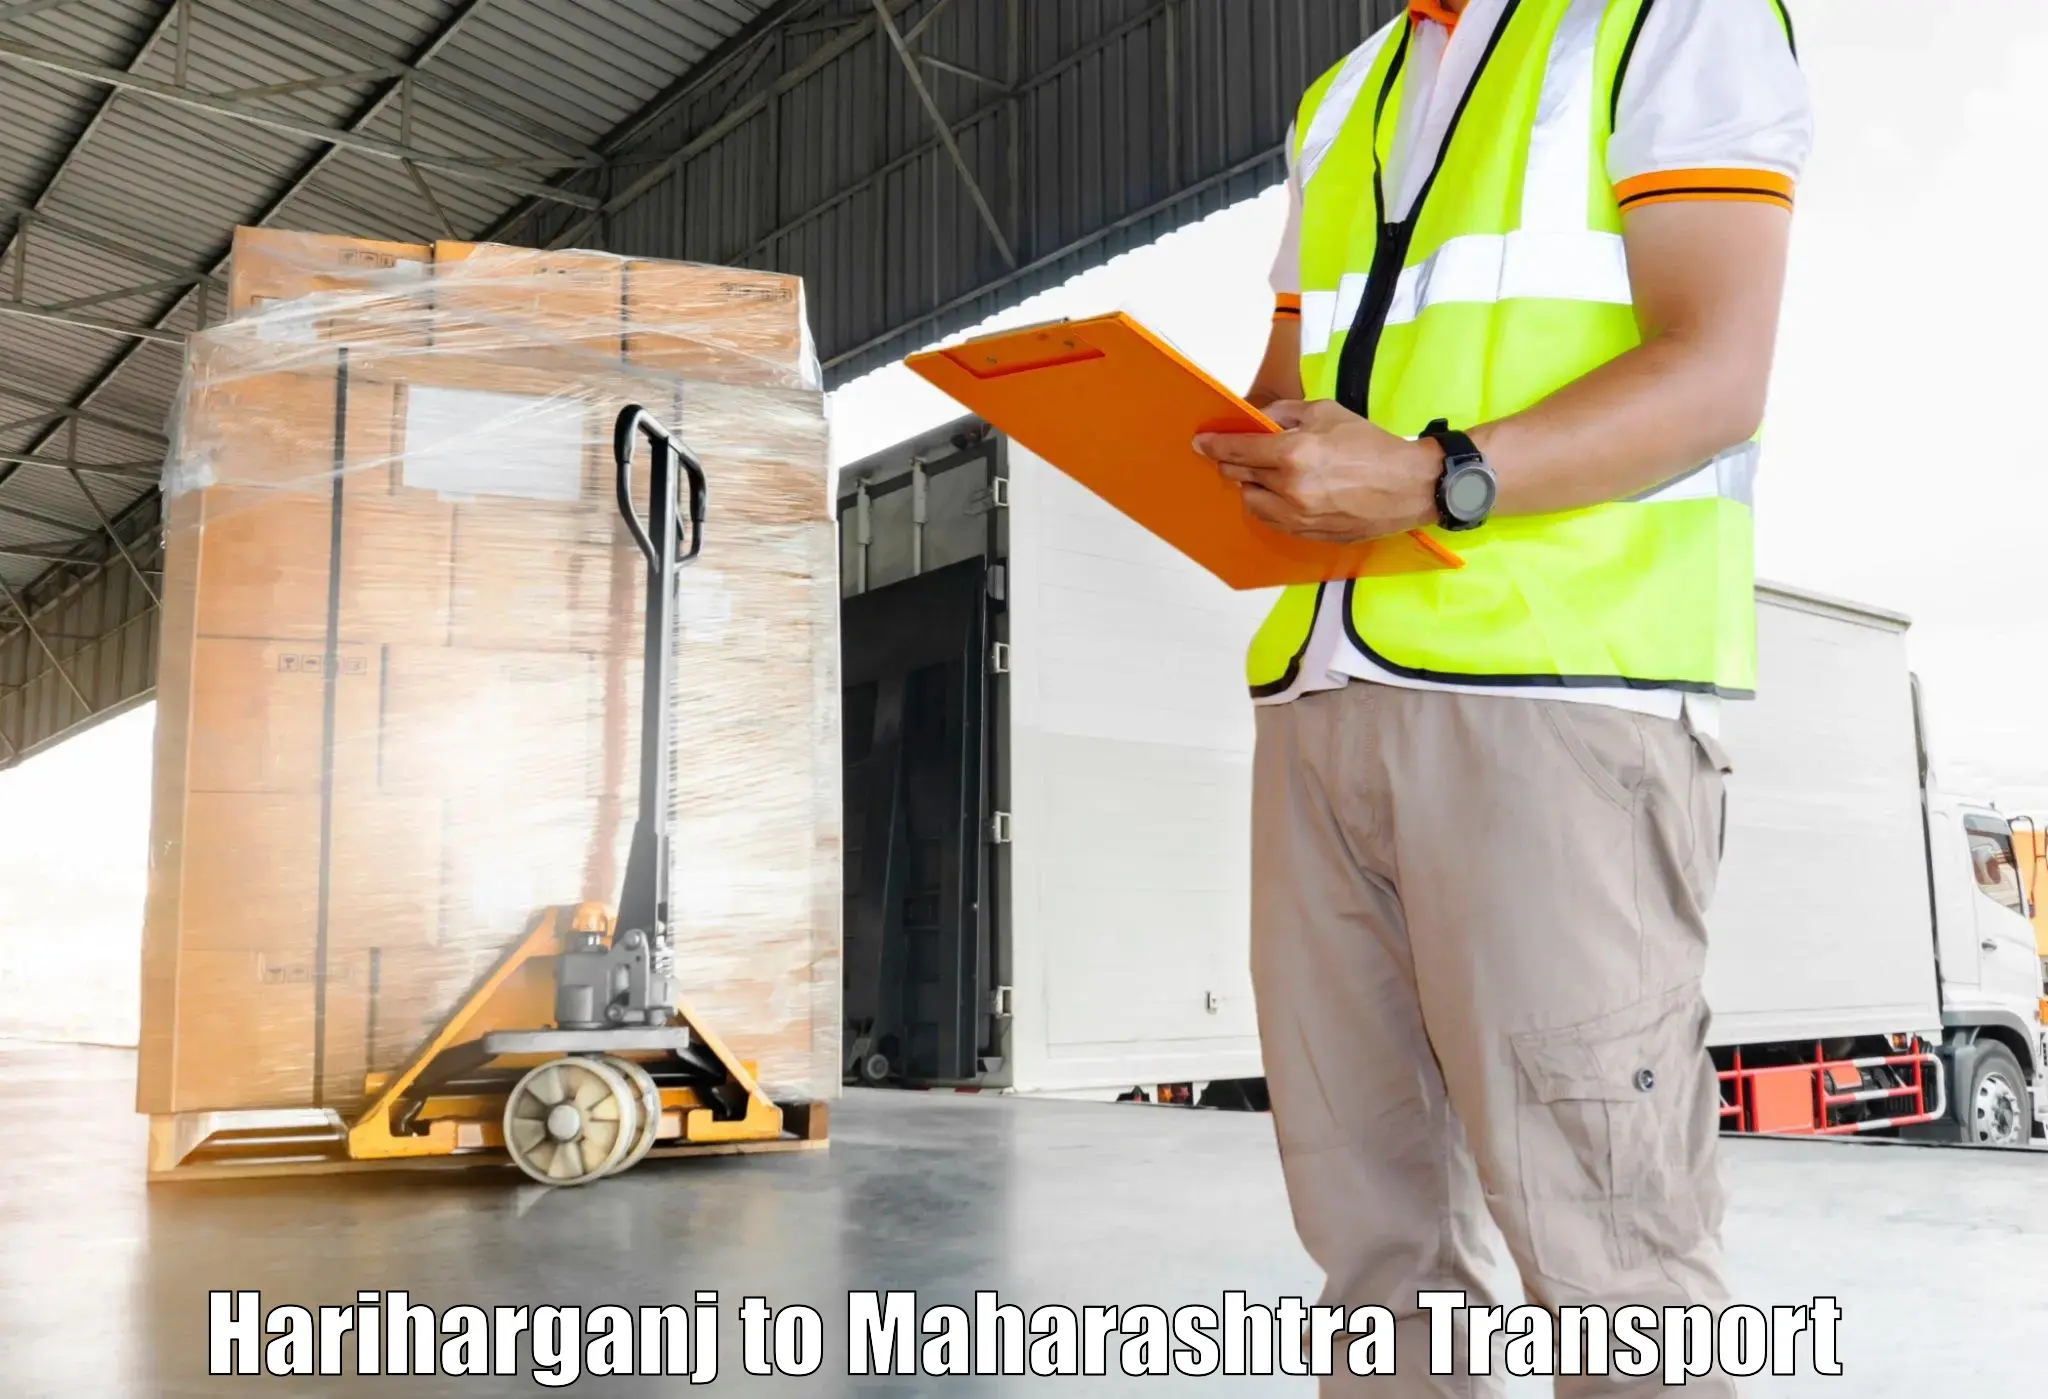 Air cargo transport services Hariharganj to Kalyan Dombivli